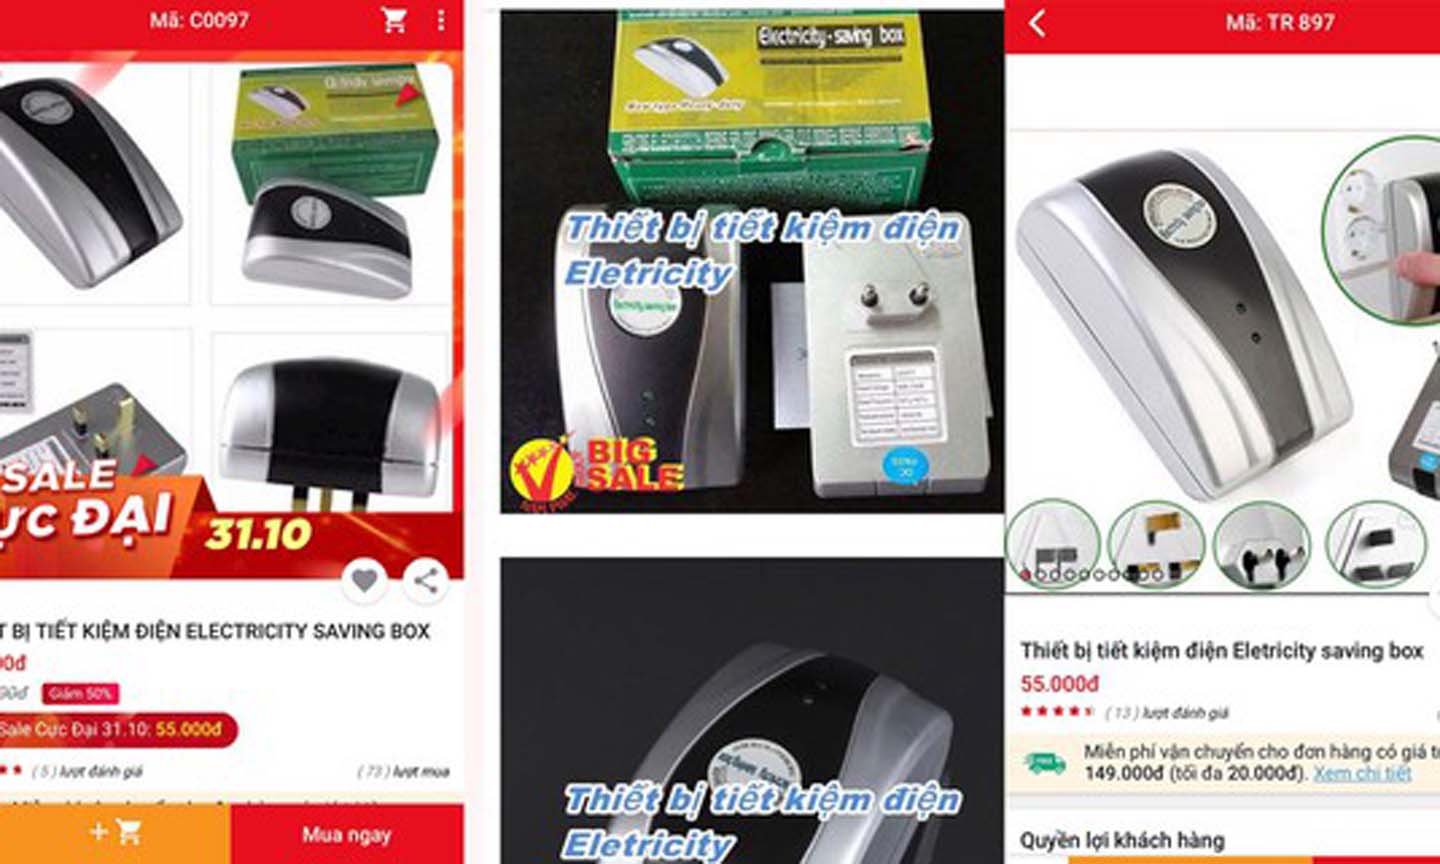 Thiết bị tiết kiệm điện được quảng cáo trên nhiều website bán hàng điện tử.